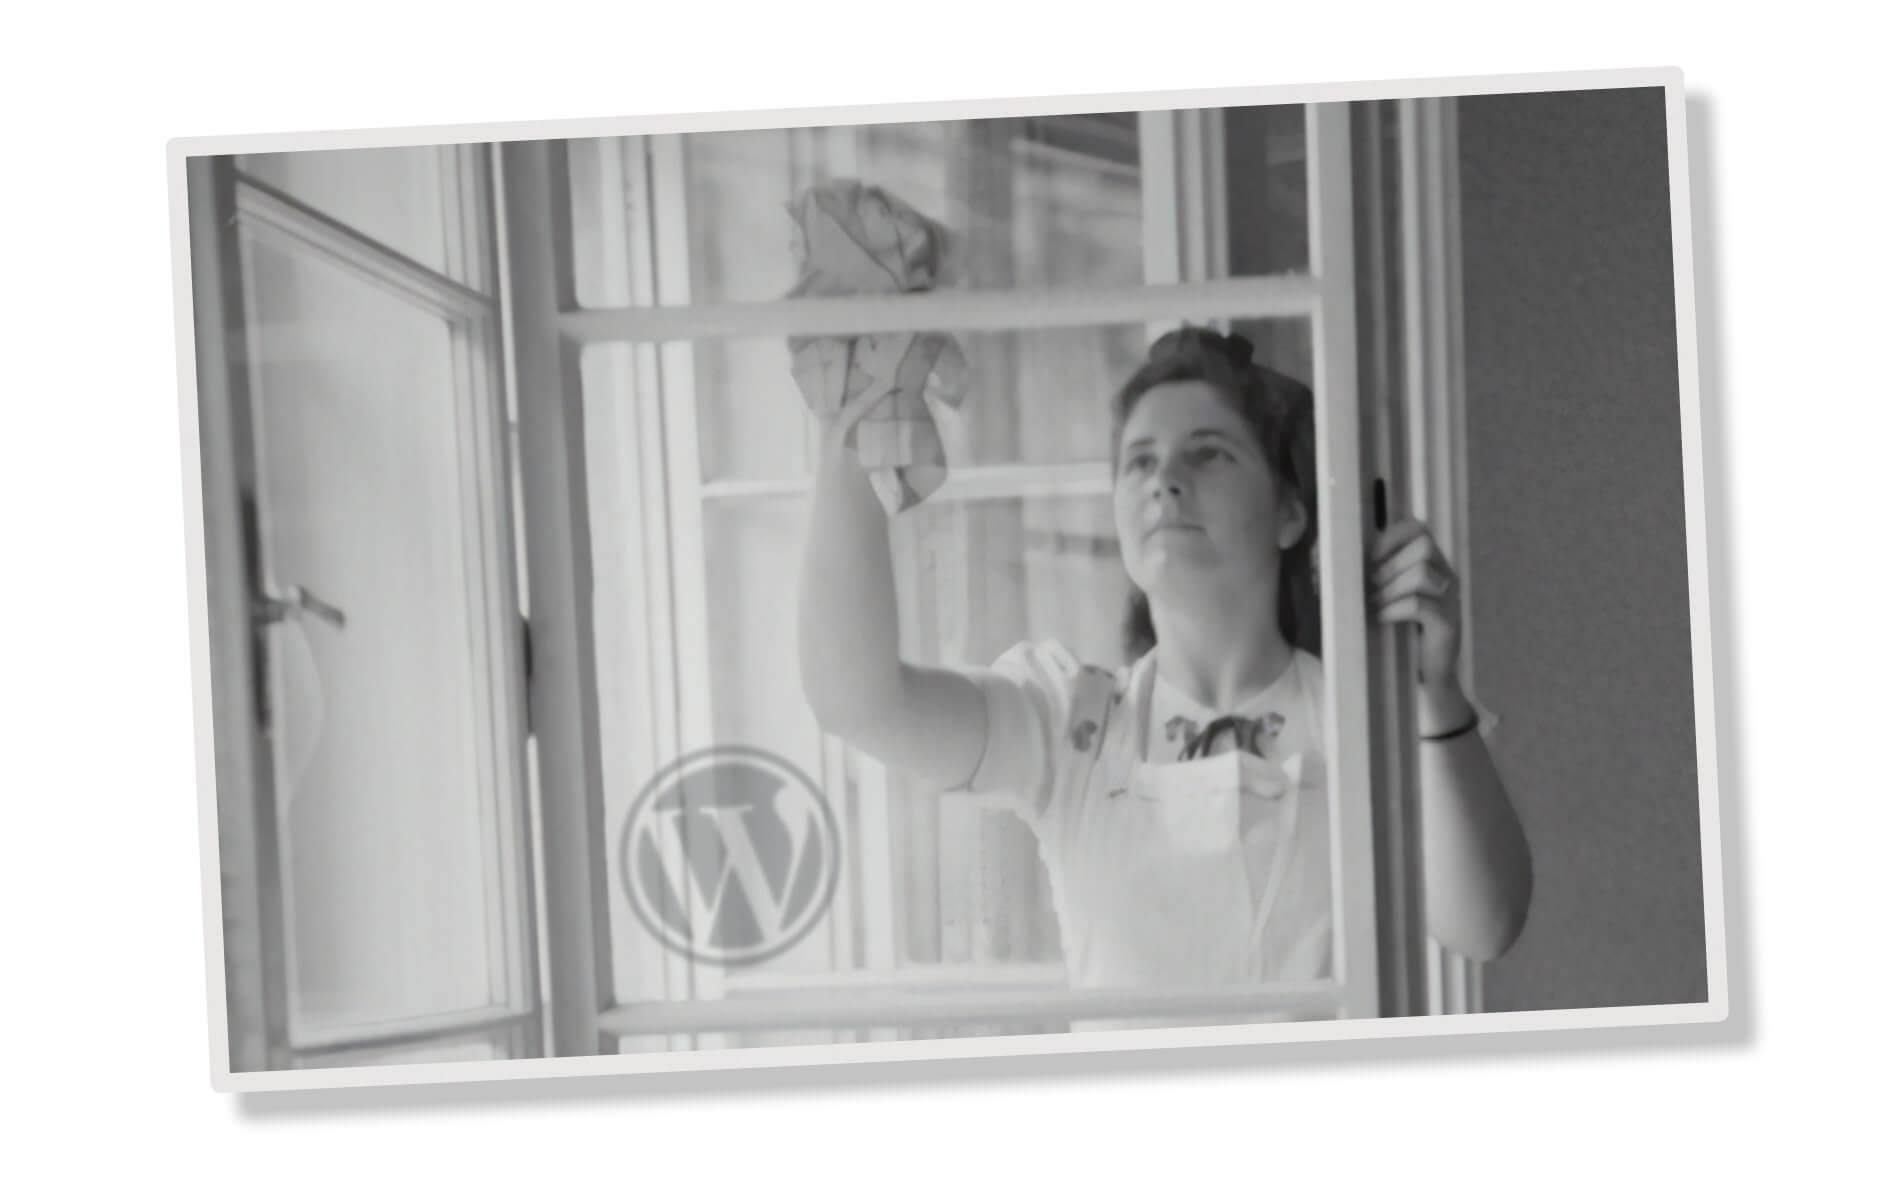 Schwarzweiß-Bilde einer Fenster putzenden Frau, WordPress Logo links unten